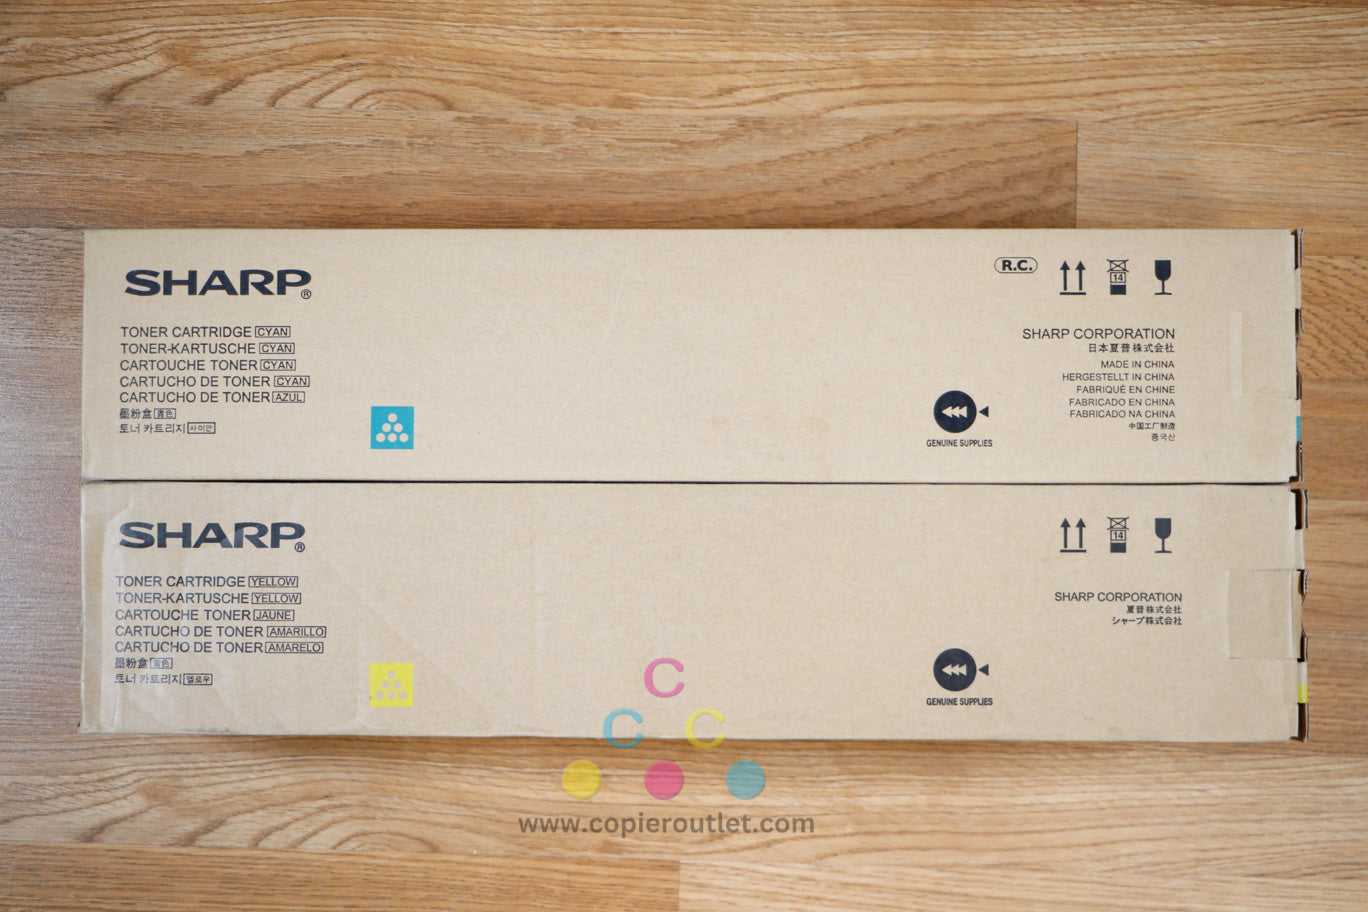 Sharp MX-62NT CY Toner Cartridges MX-6240N MX-6500N MX-6580N MX-7580N MX-8090N!!